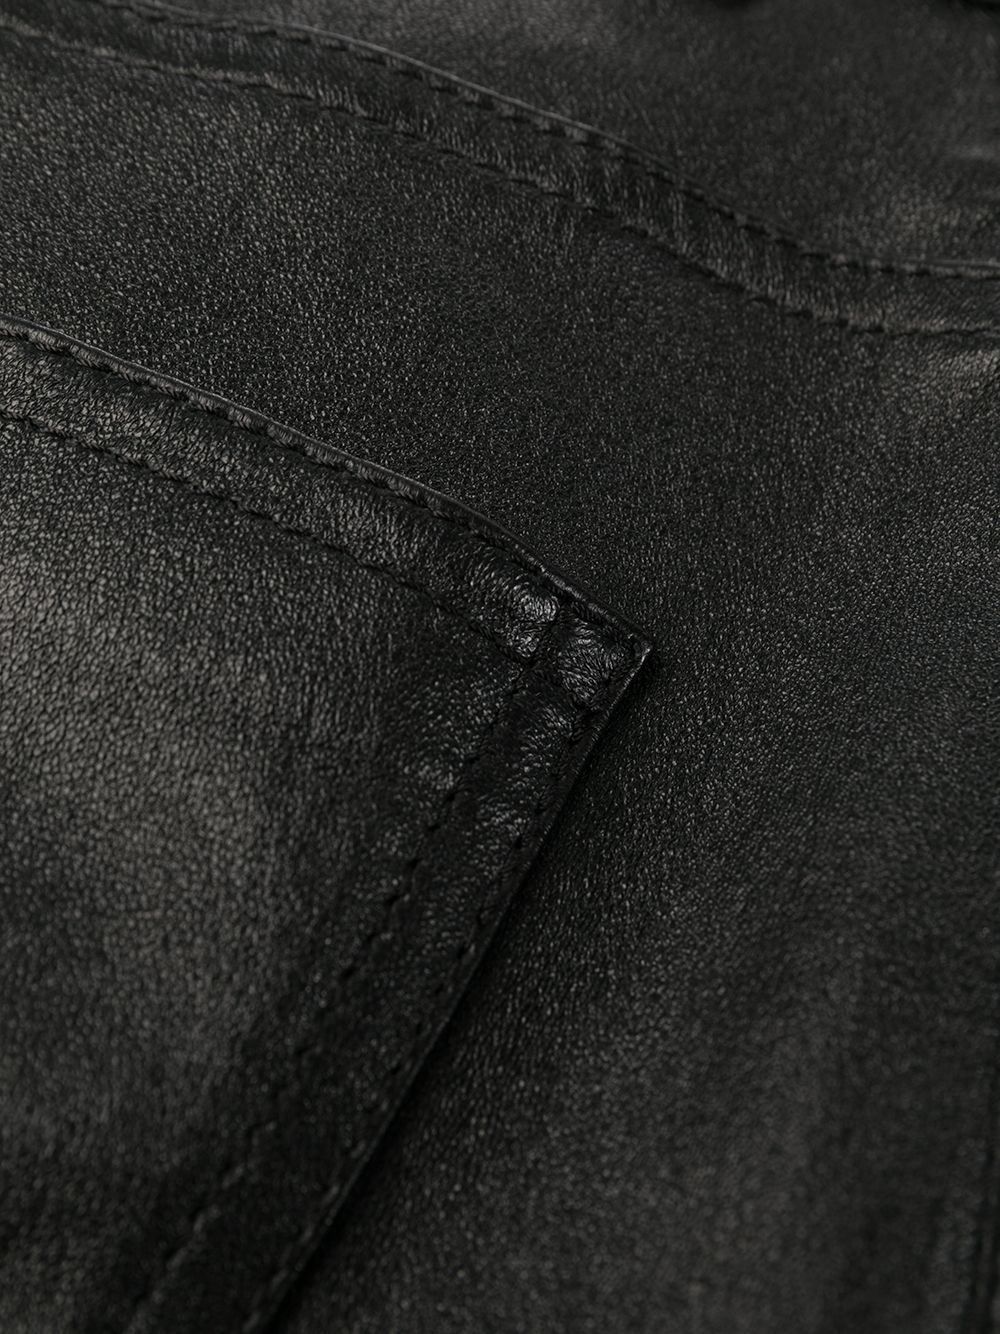 Saint Laurent Faux Leather Trousers, $750, farfetch.com